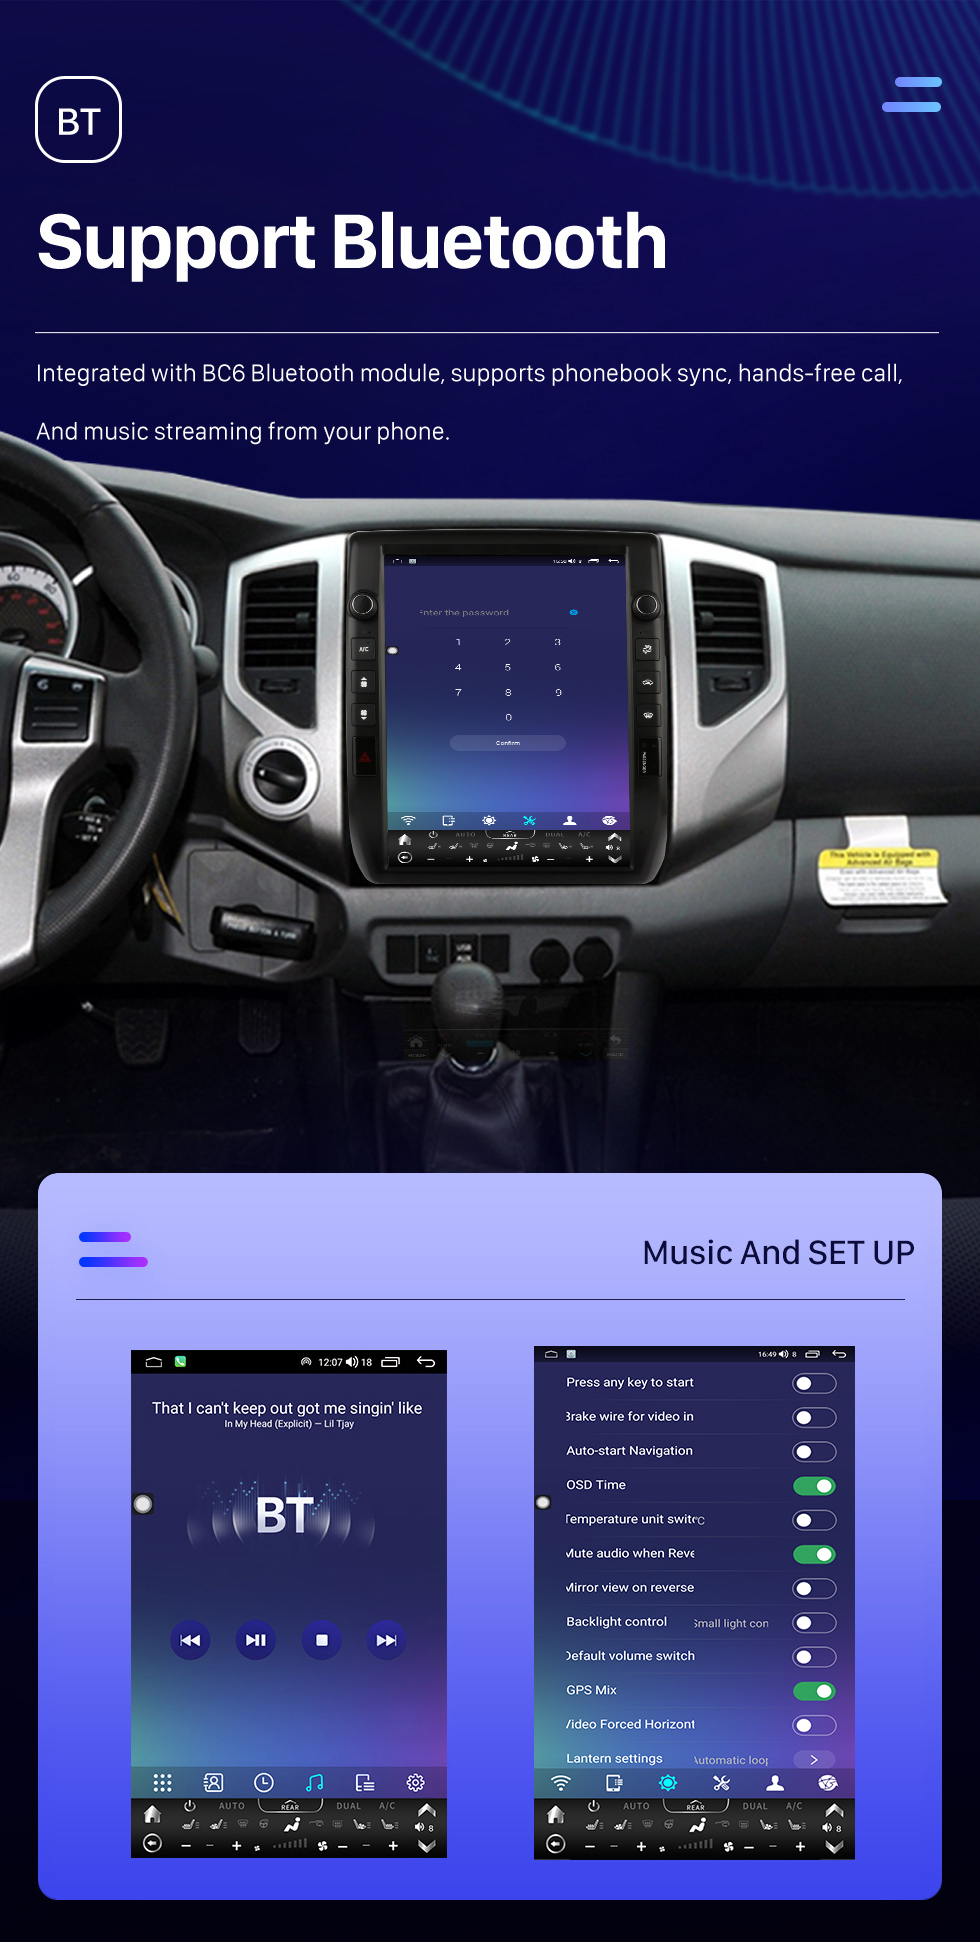 Seicane Radio de navigation GPS à écran tactile HD Android 10.0 de 12,1 pouces pour 2005 2006 2007 2008-2015 TOYOTA Tacoma avec prise en charge Bluetooth Carplay Caméra TPMS AHD